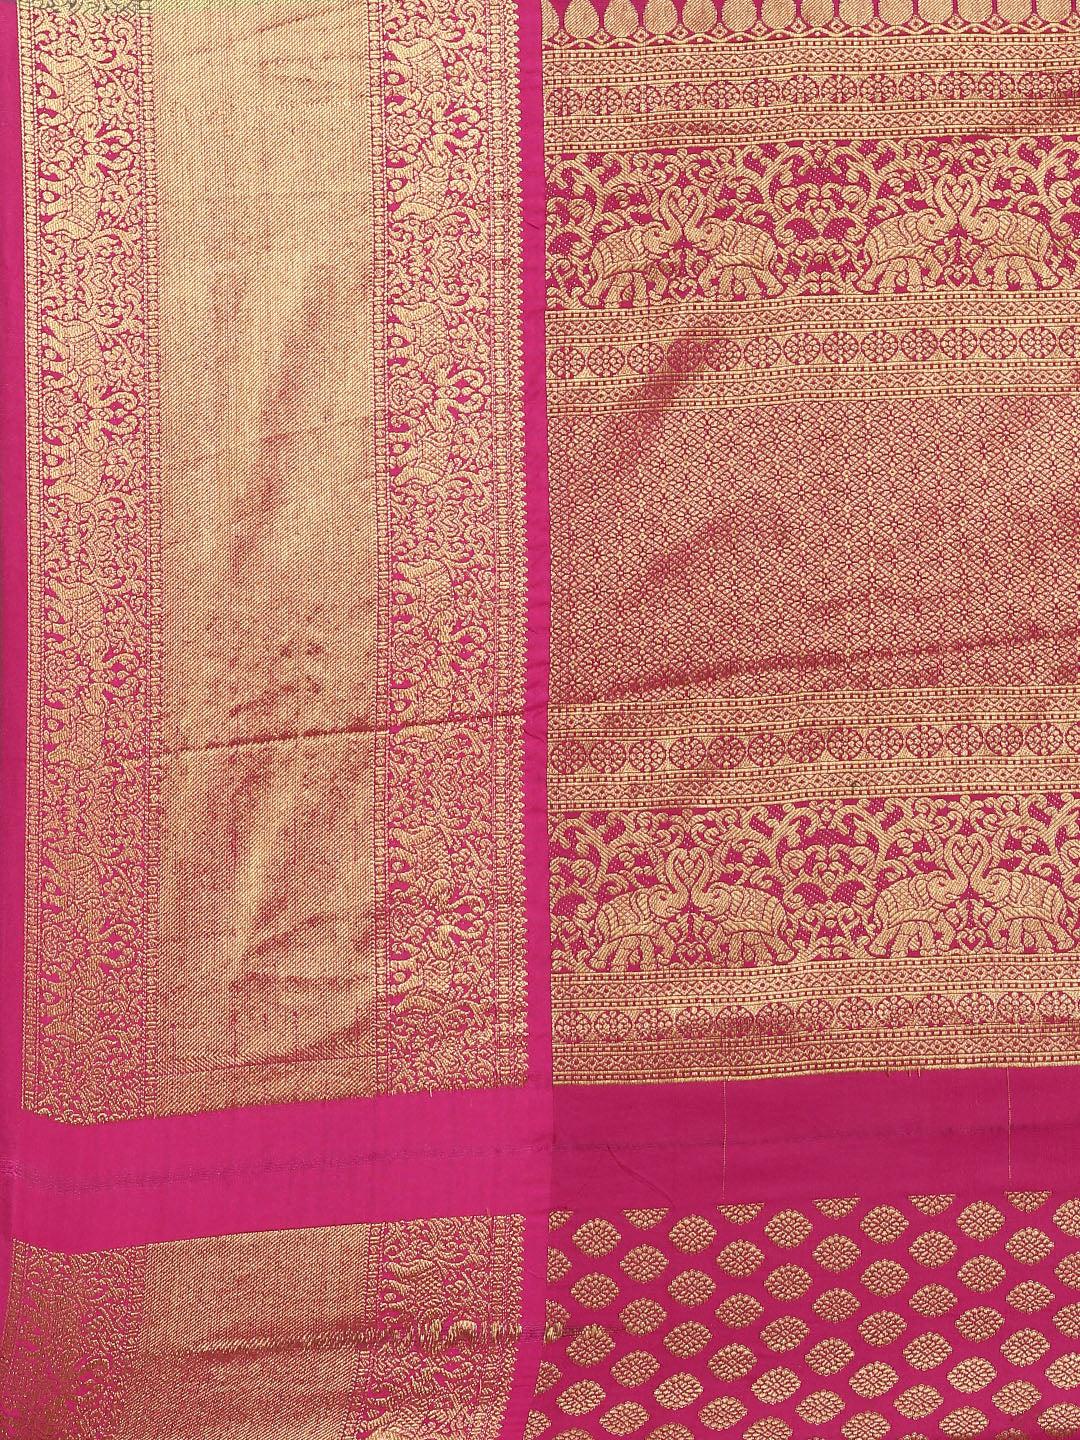  Green Colour Kanjivaram Silk Saree with Checked Print